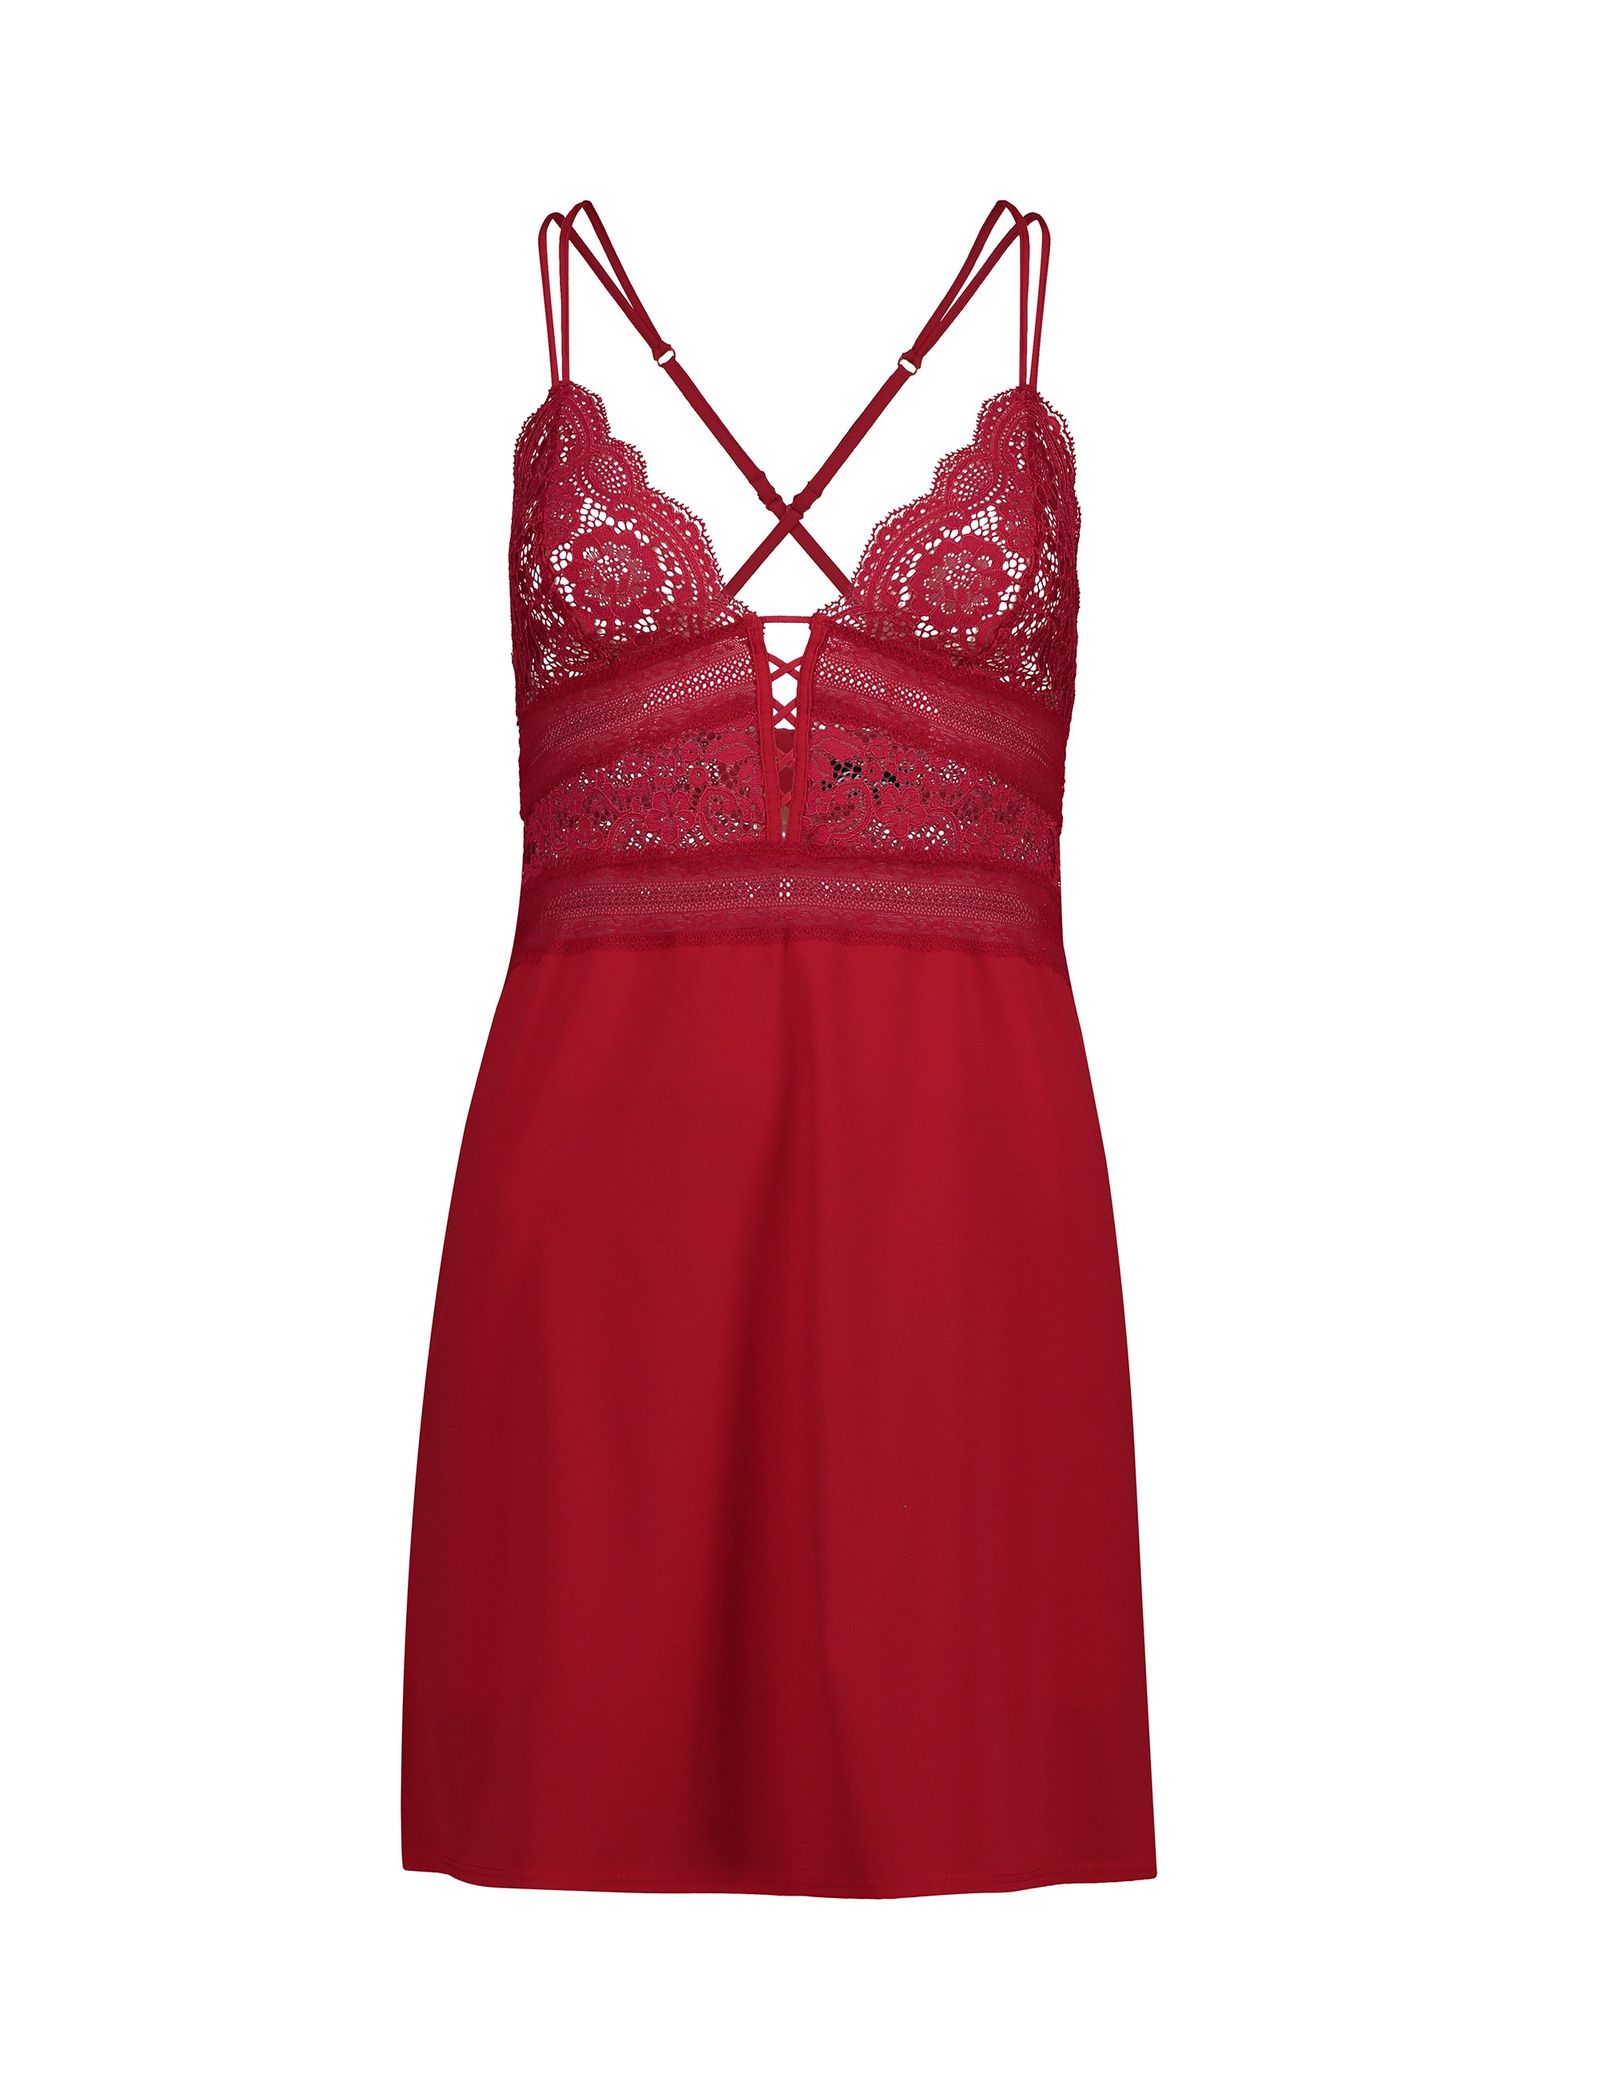 لباس خواب یک تکه زنانه - اتام - قرمز - 2